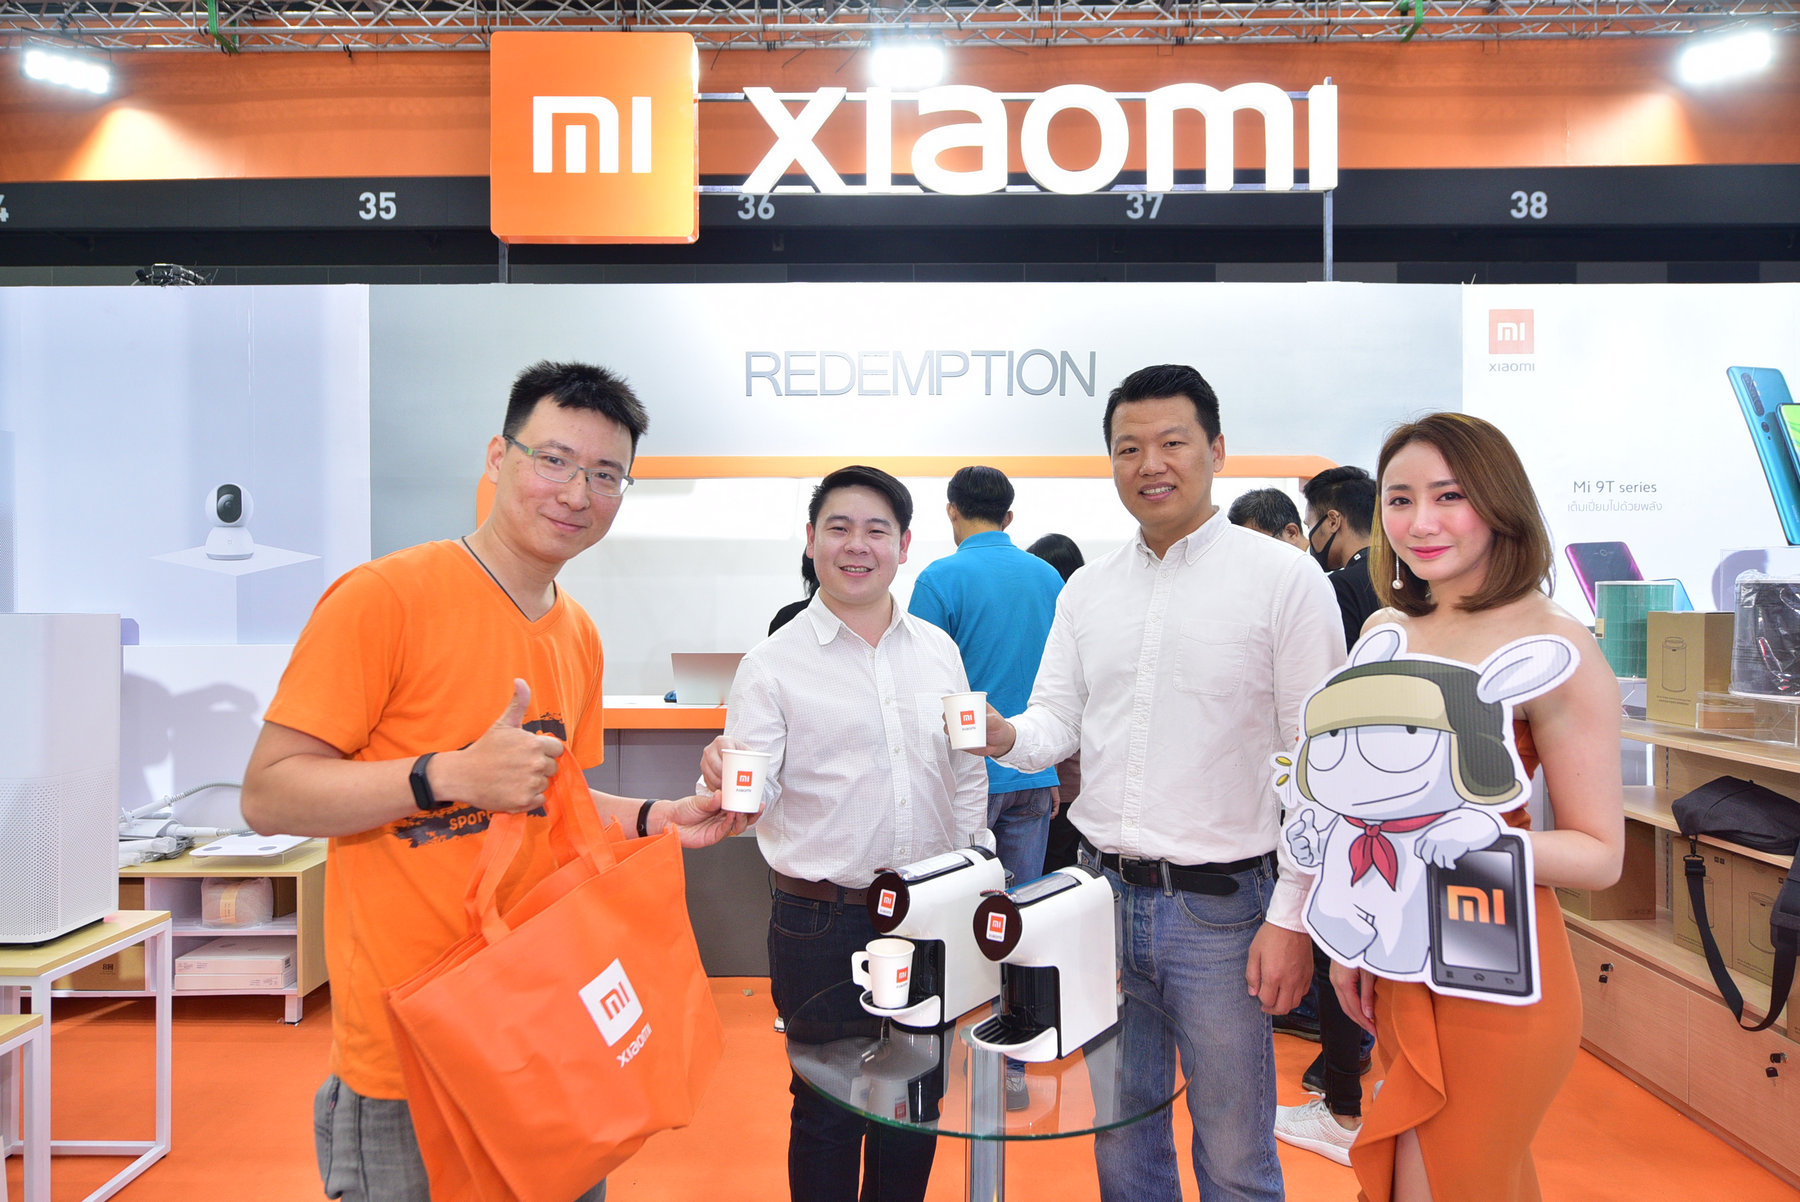 Xiaomi TME2020 1 resize | Mi | Xiaomi ประกาศส่วนลดสมาร์ทโฟนและของแถมเซอร์ไพรส์ลูกค้ากลางงาน TME 2020